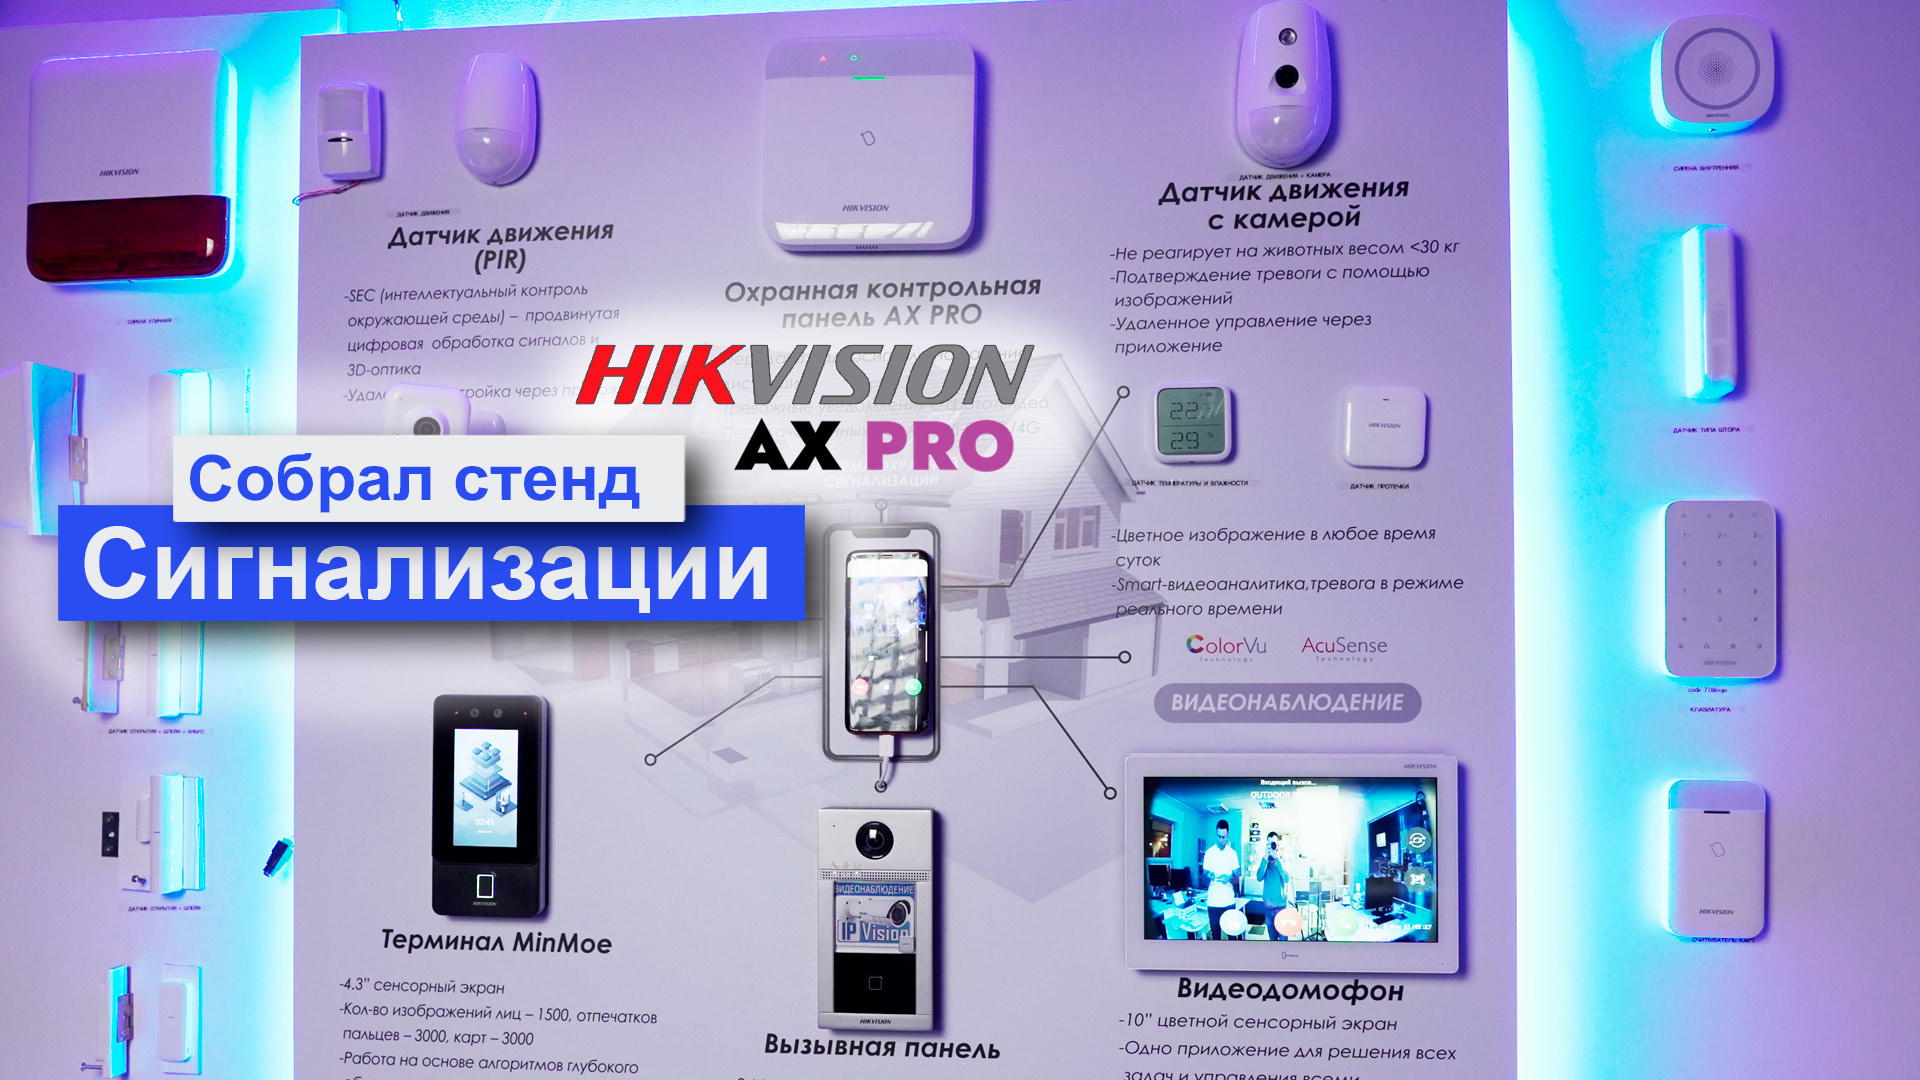 стенд с охранной сигнализацией Ax Pro Hikvision